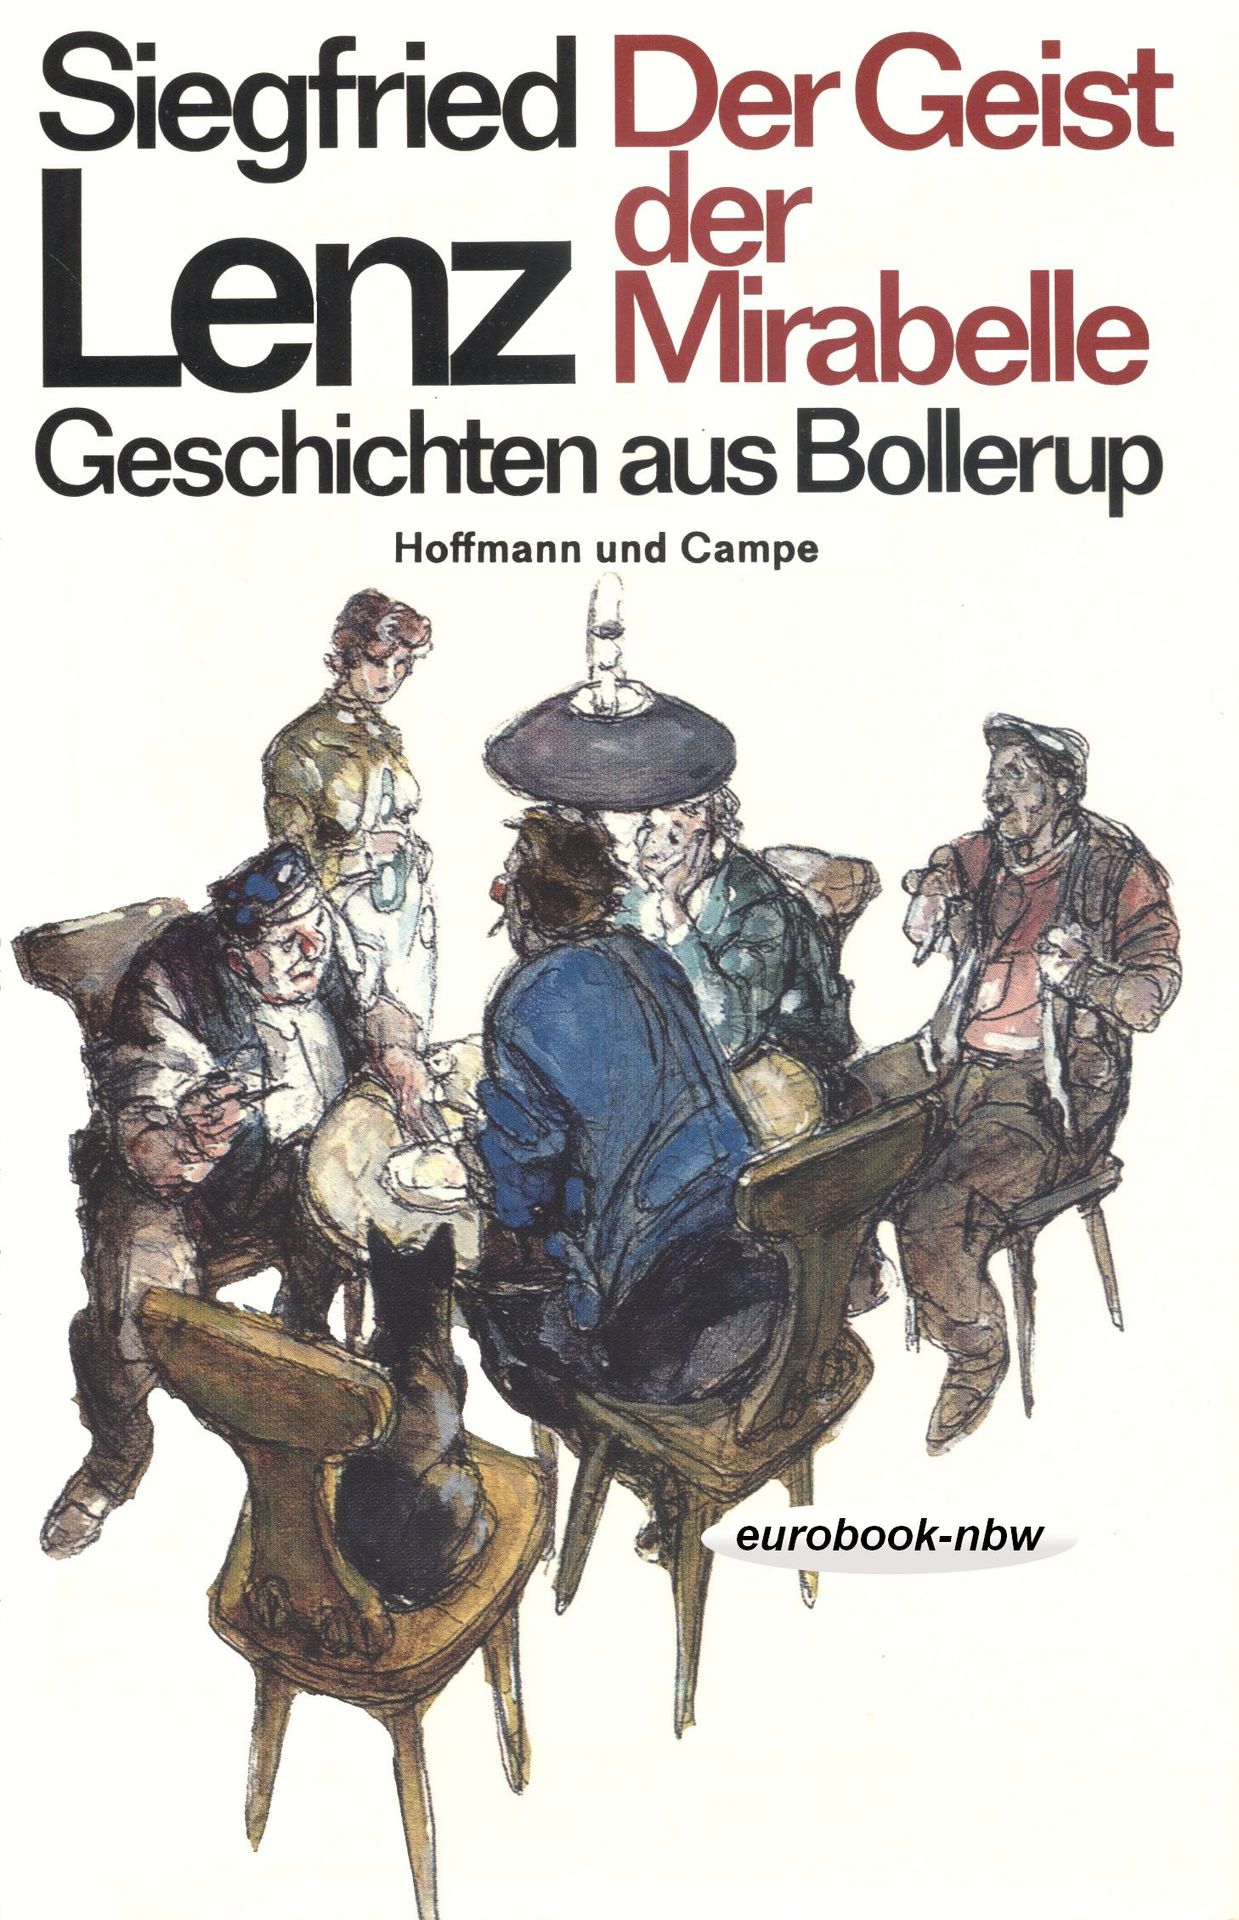 Der Geist der Mirabelle. Geschichten aus Bollerup (12 Erzählungen)  4. - Siegfried Lenz